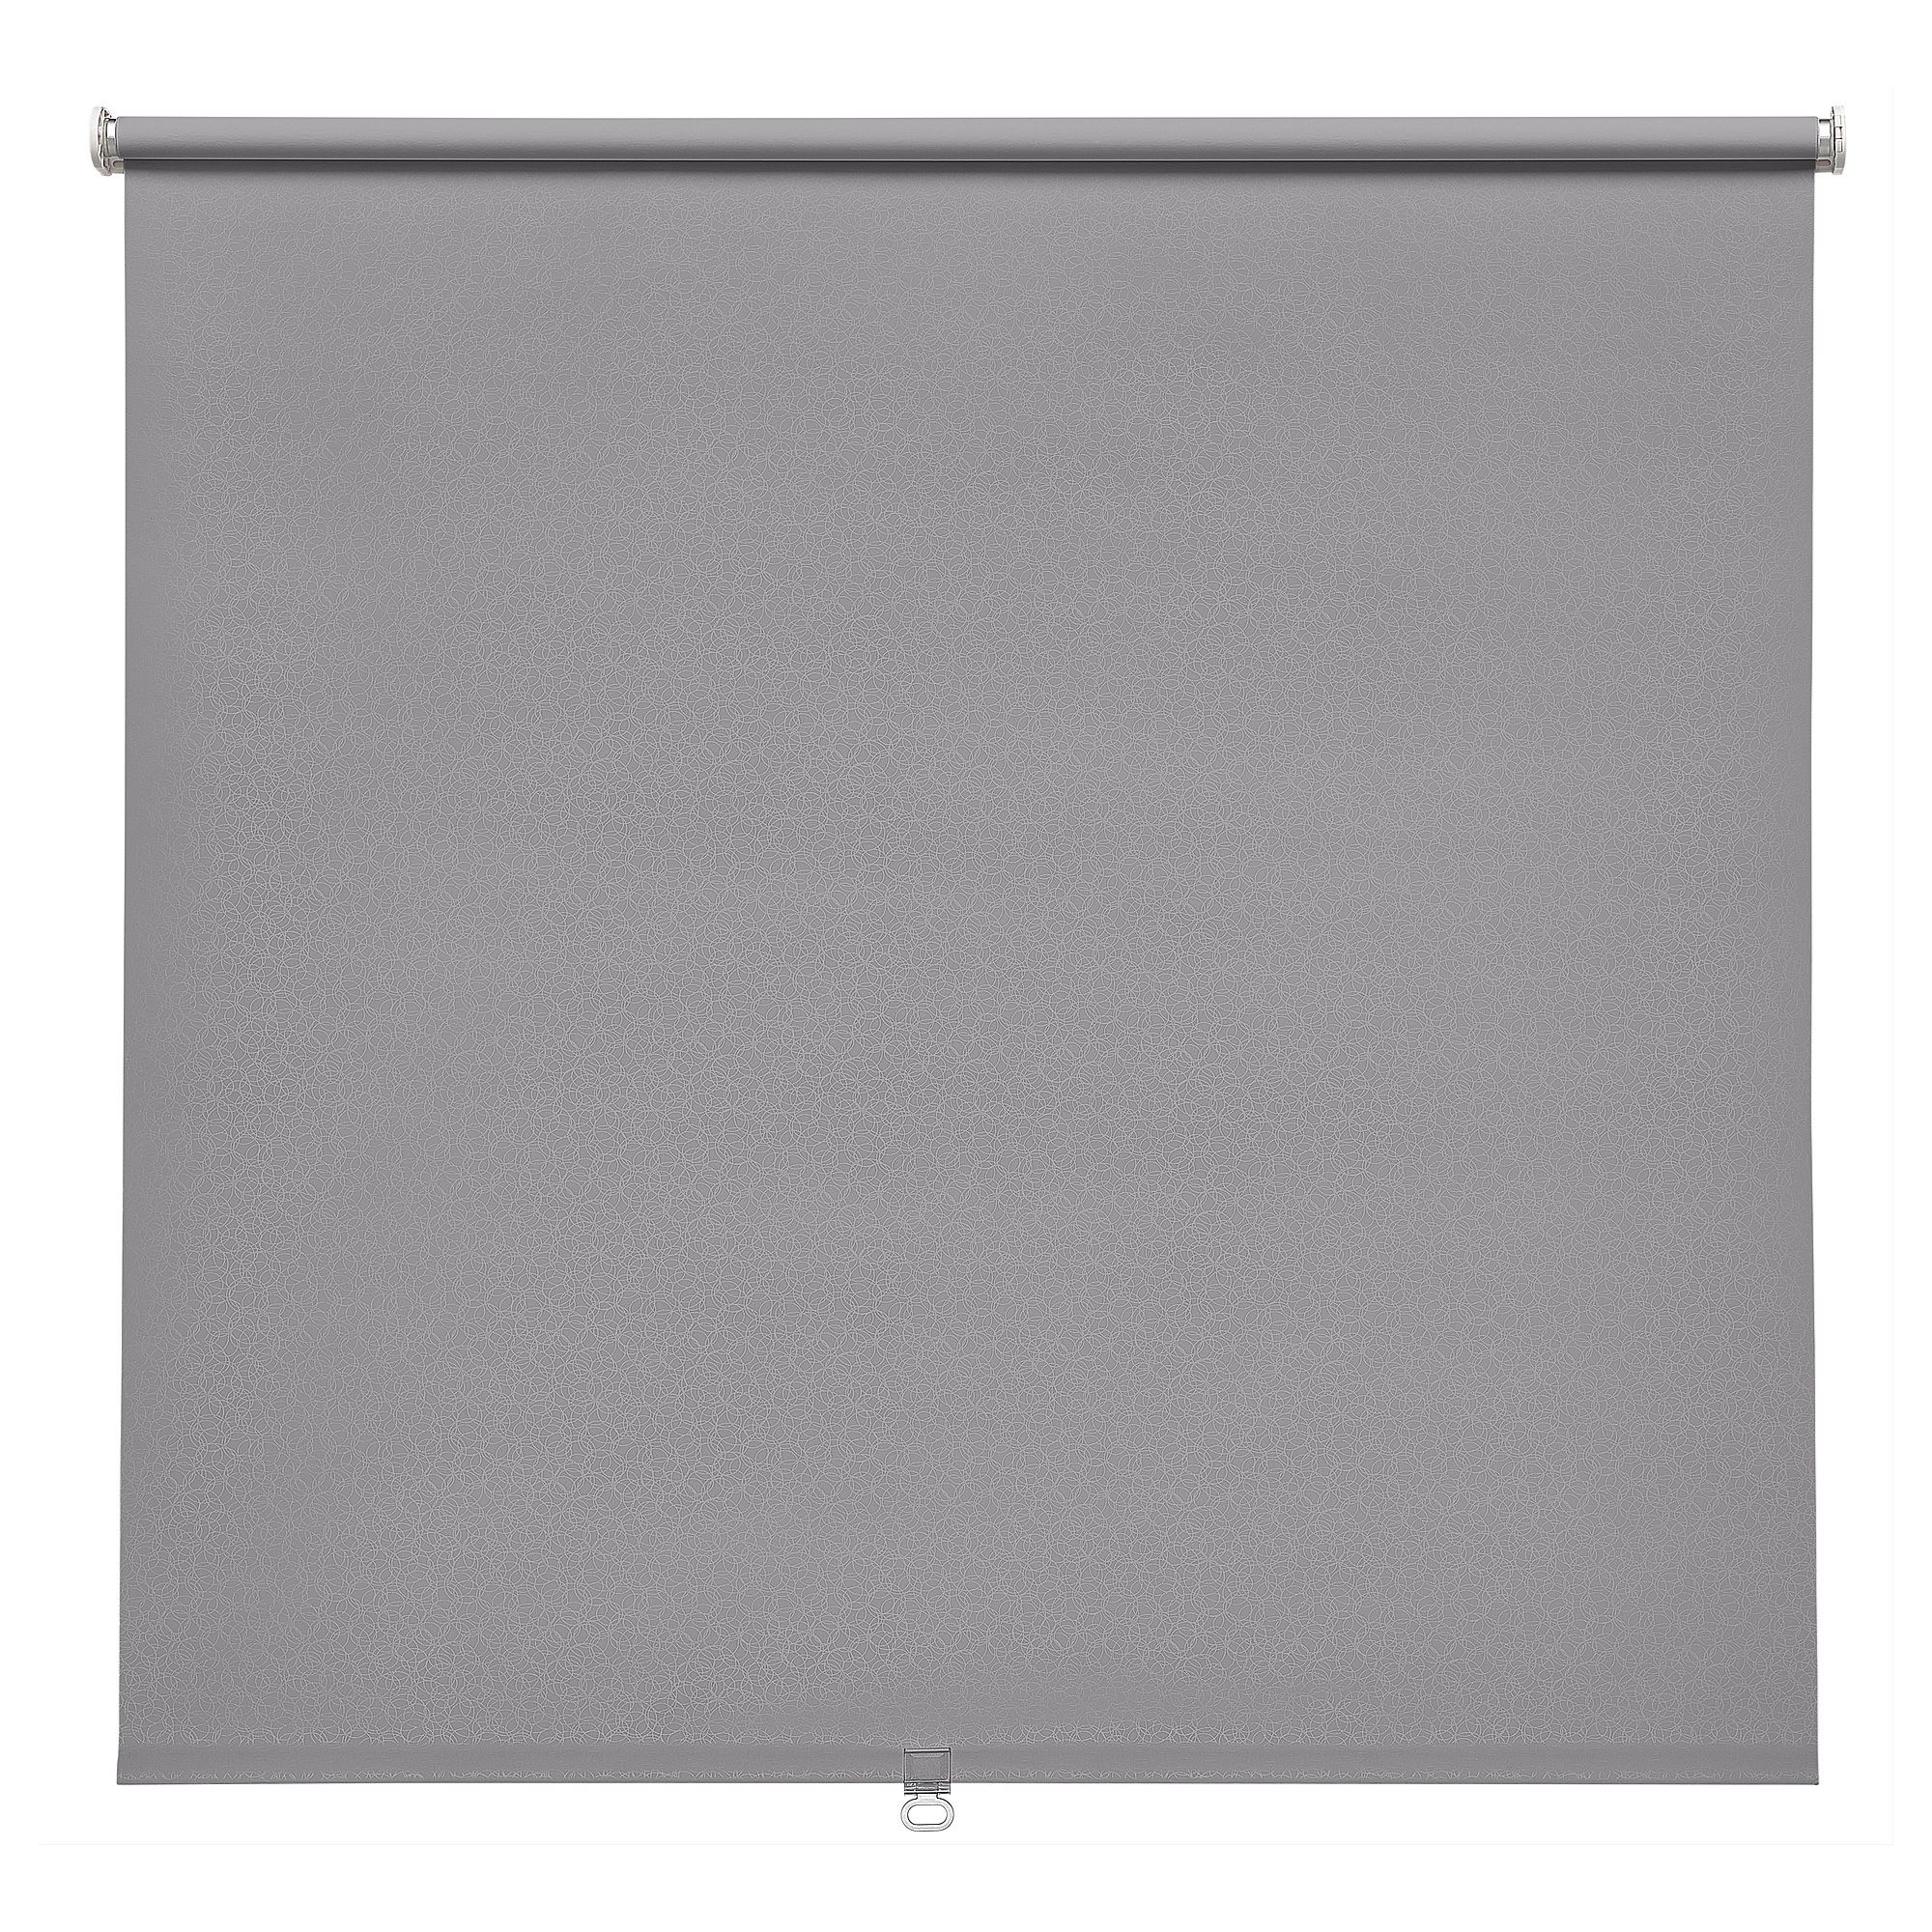 Рулонная штора, блокирующая свет 120x155 см Ikea Fonsterblad, серый